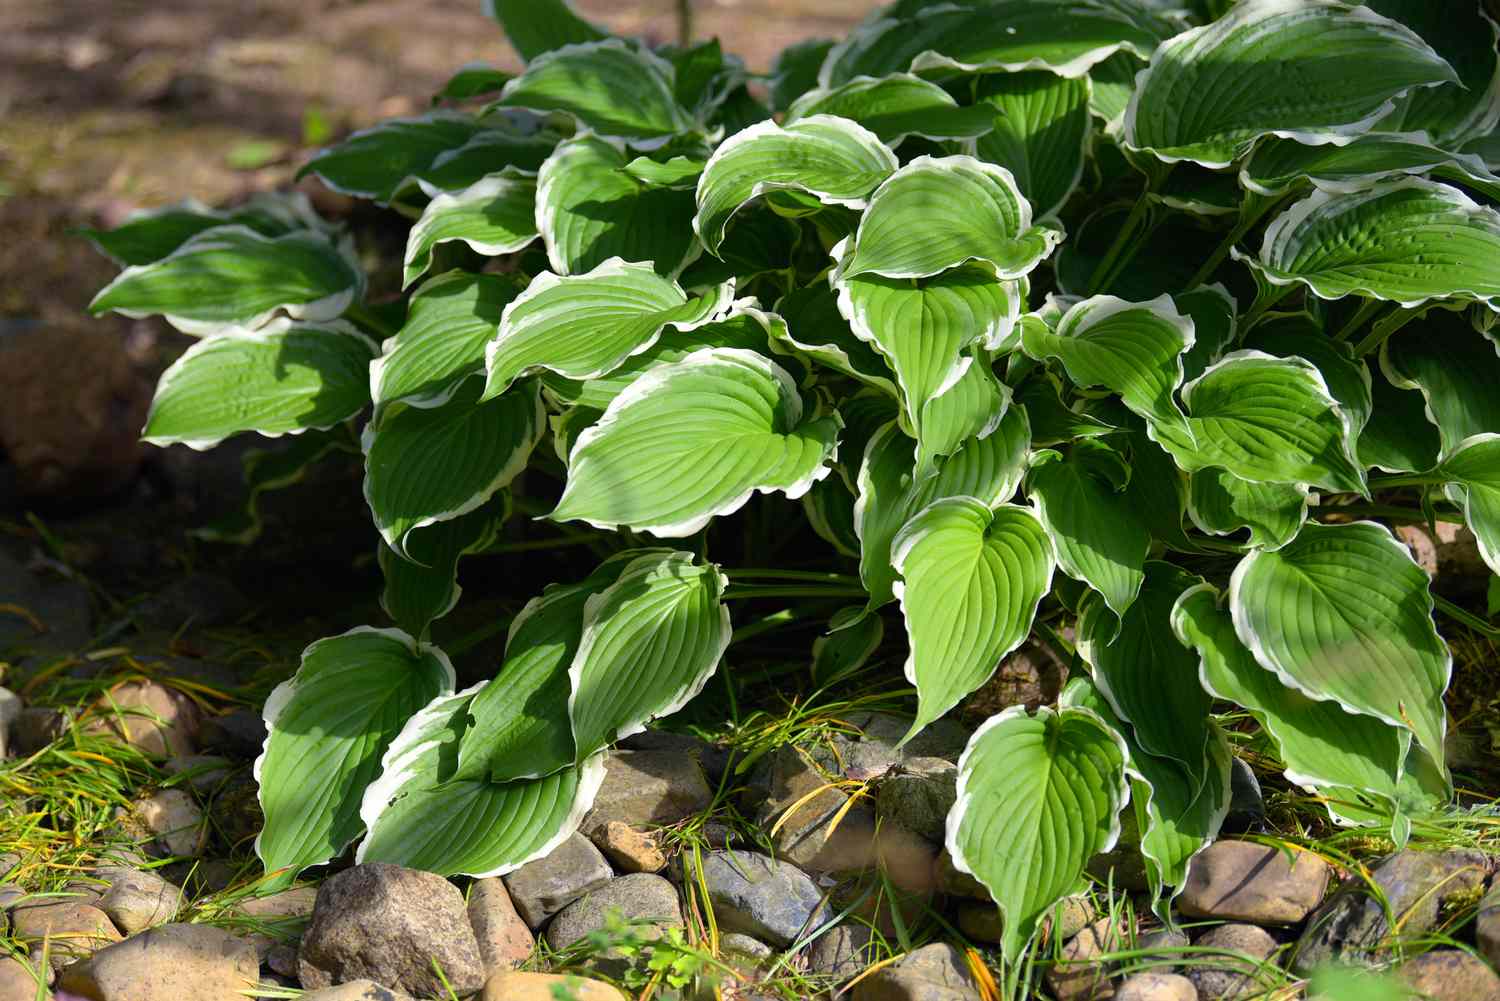 Planta Hosta com folhas brancas e verdes variegadas perto de rochas